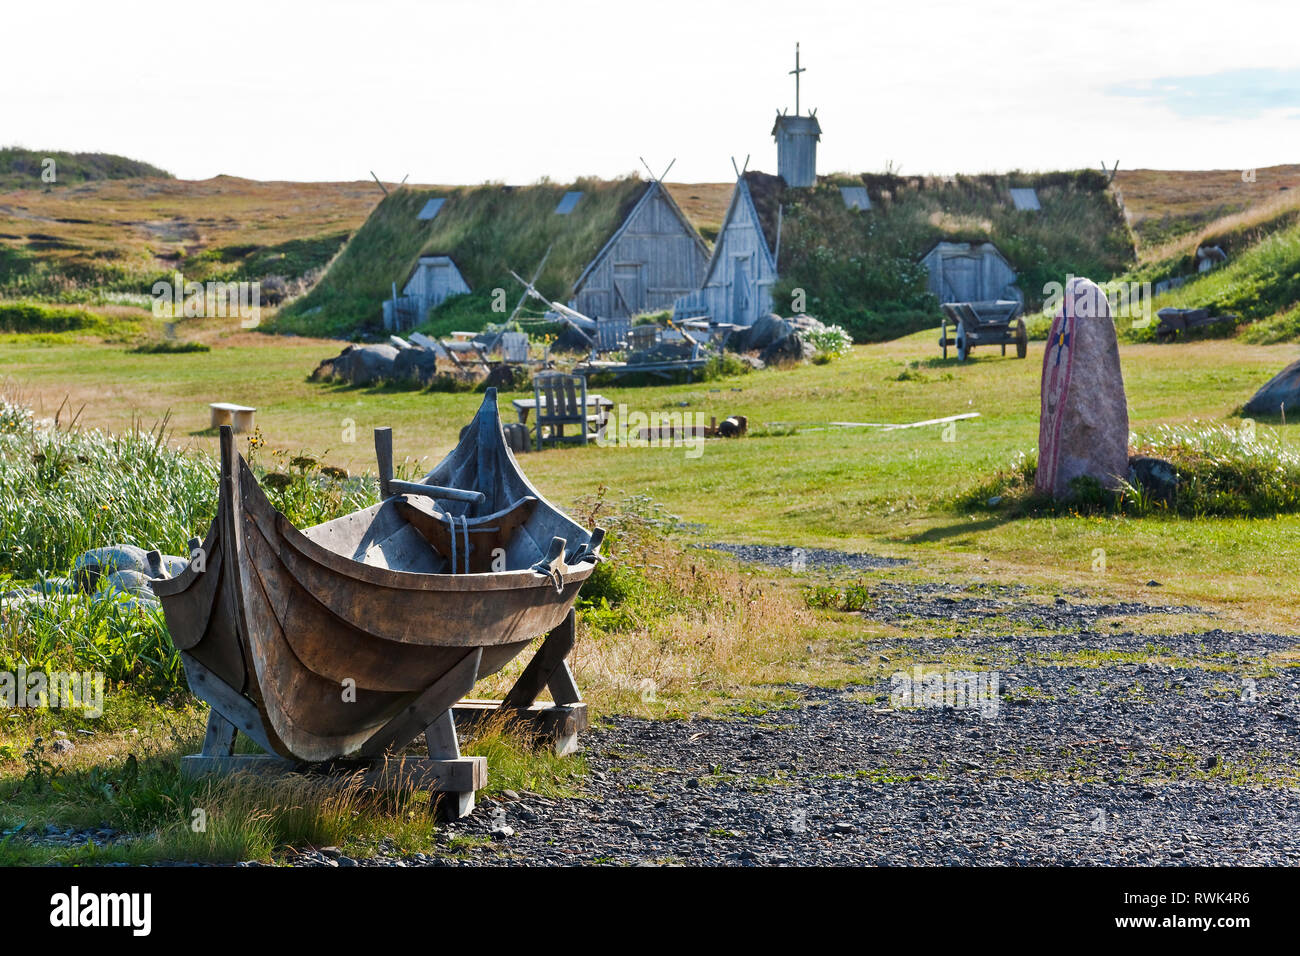 Un faering scandinaves (c.-à-d. un bateau de oar) derrière laquelle se trouve une église couverte de gazon et d'une forge à Norstead Villange Viking et le port de commerce, DE L'Anse au Meadows, Terre-Neuve, Canada Banque D'Images